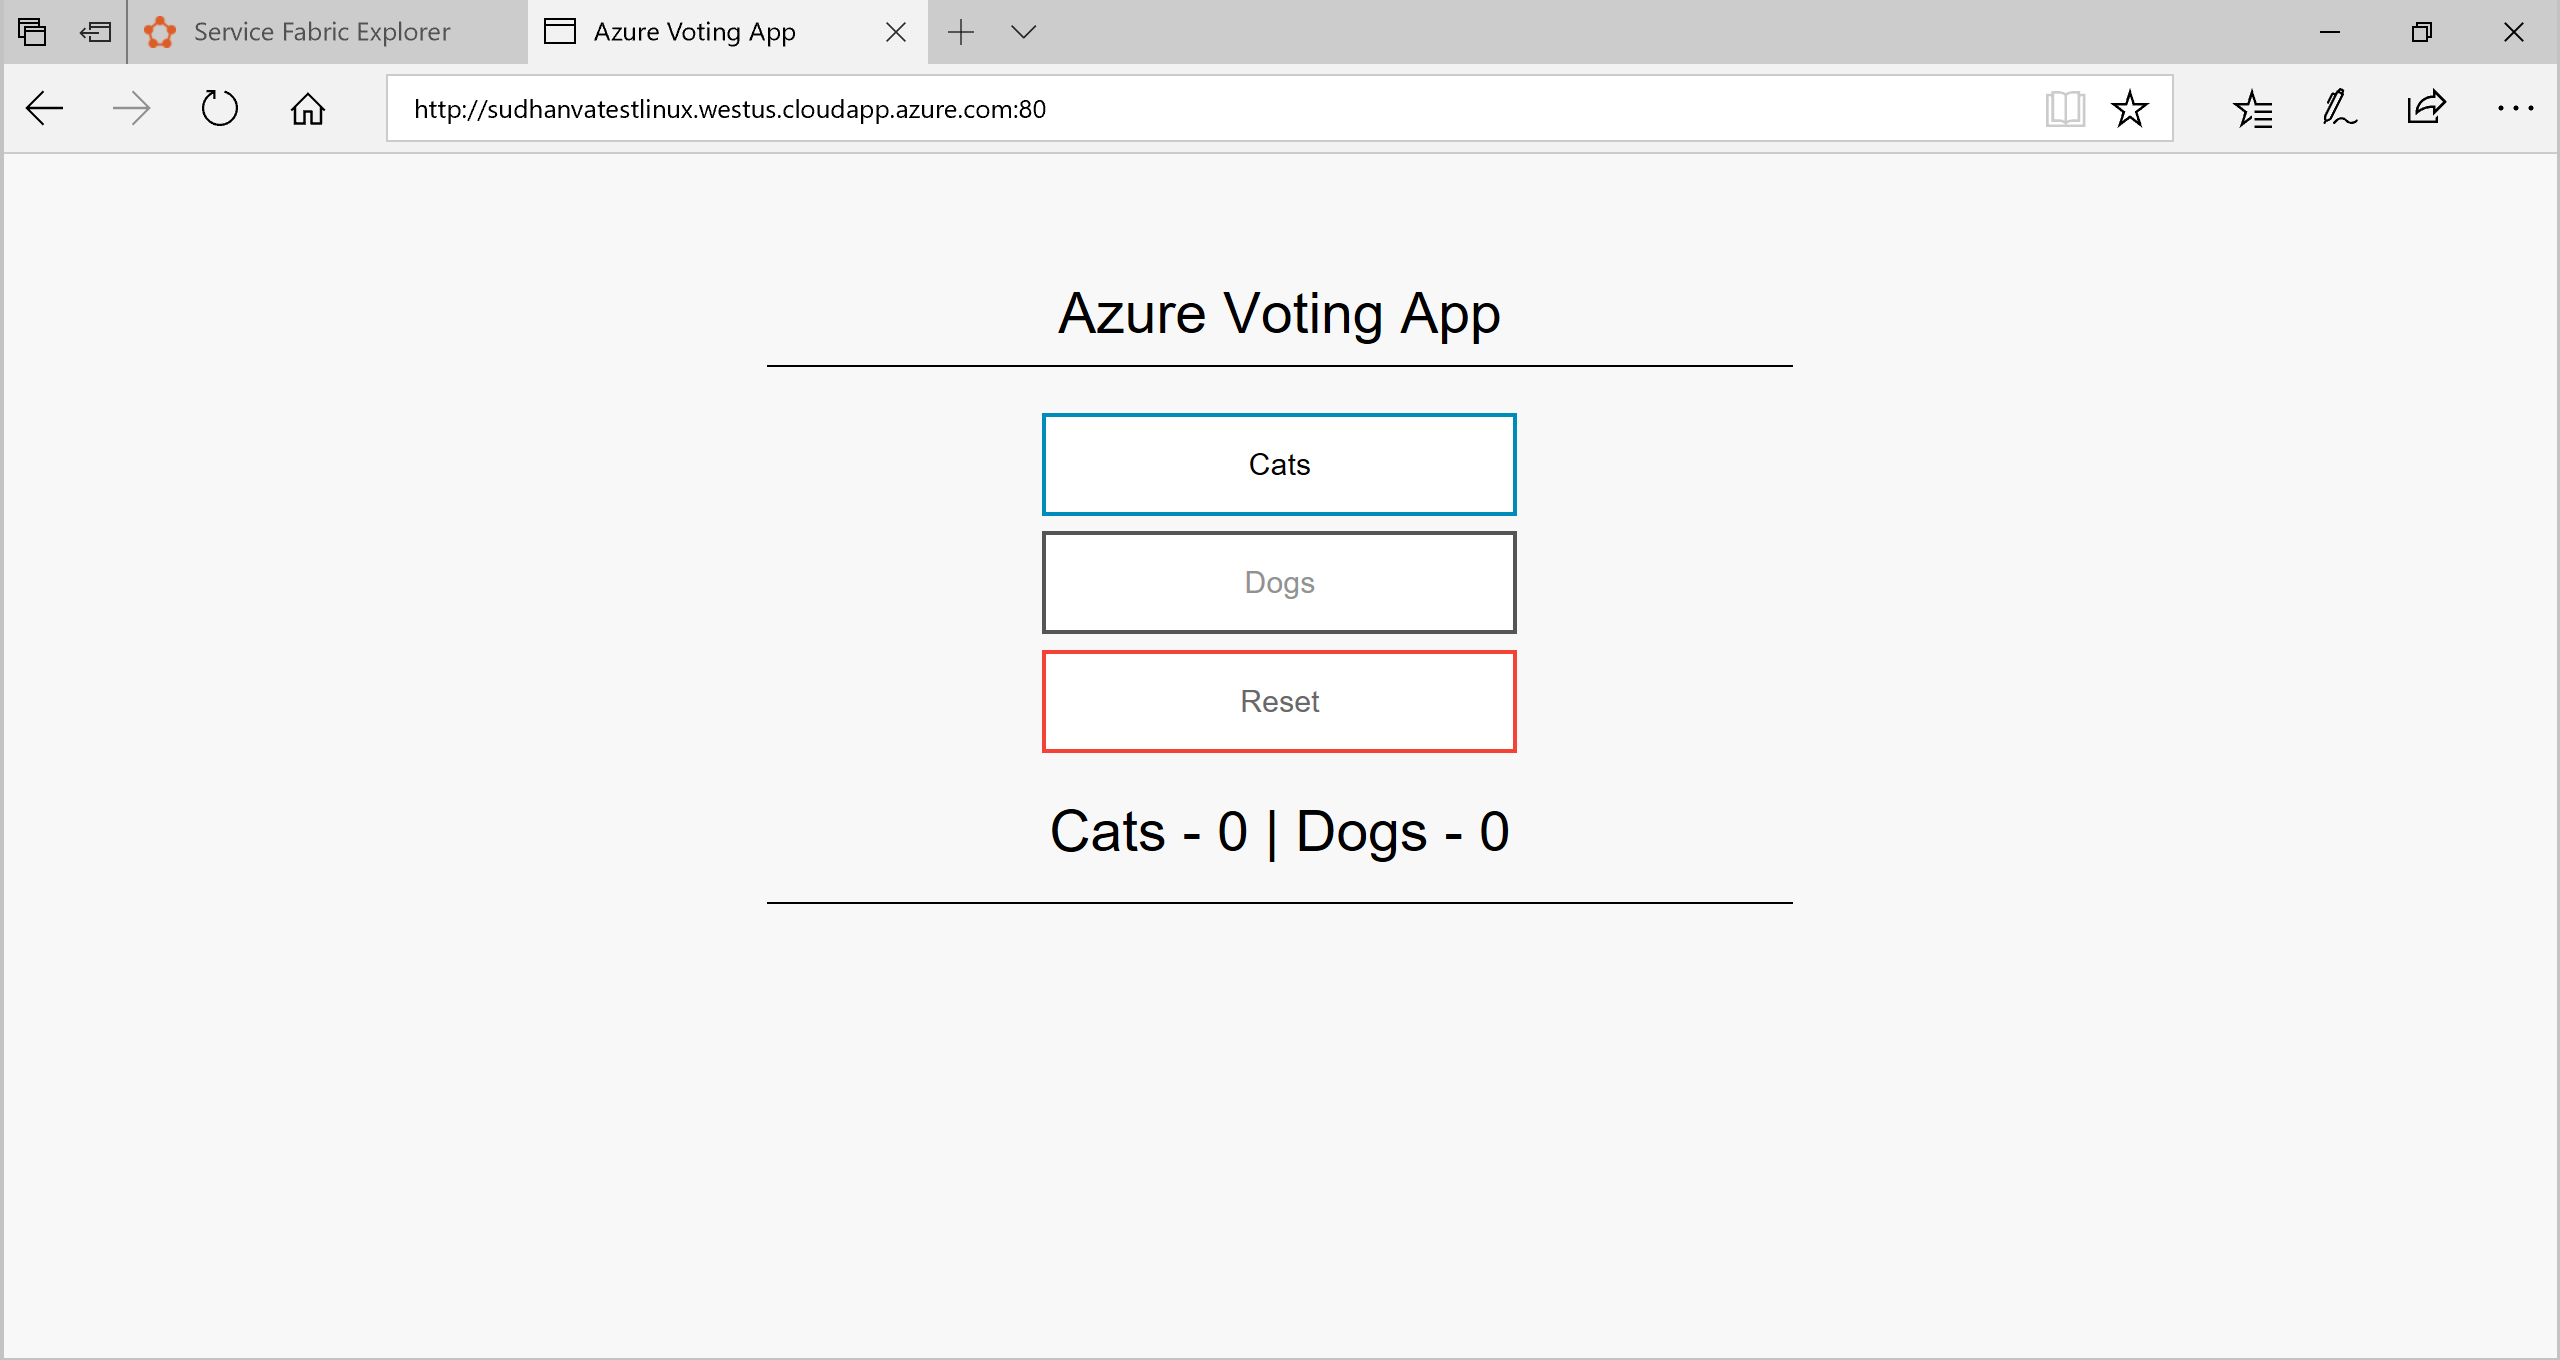 Captura de pantalla que muestra la aplicación Voting de Azure con botones para Cats (Gatos), Dogs (Perros), Reset (Restablecer) y totales.